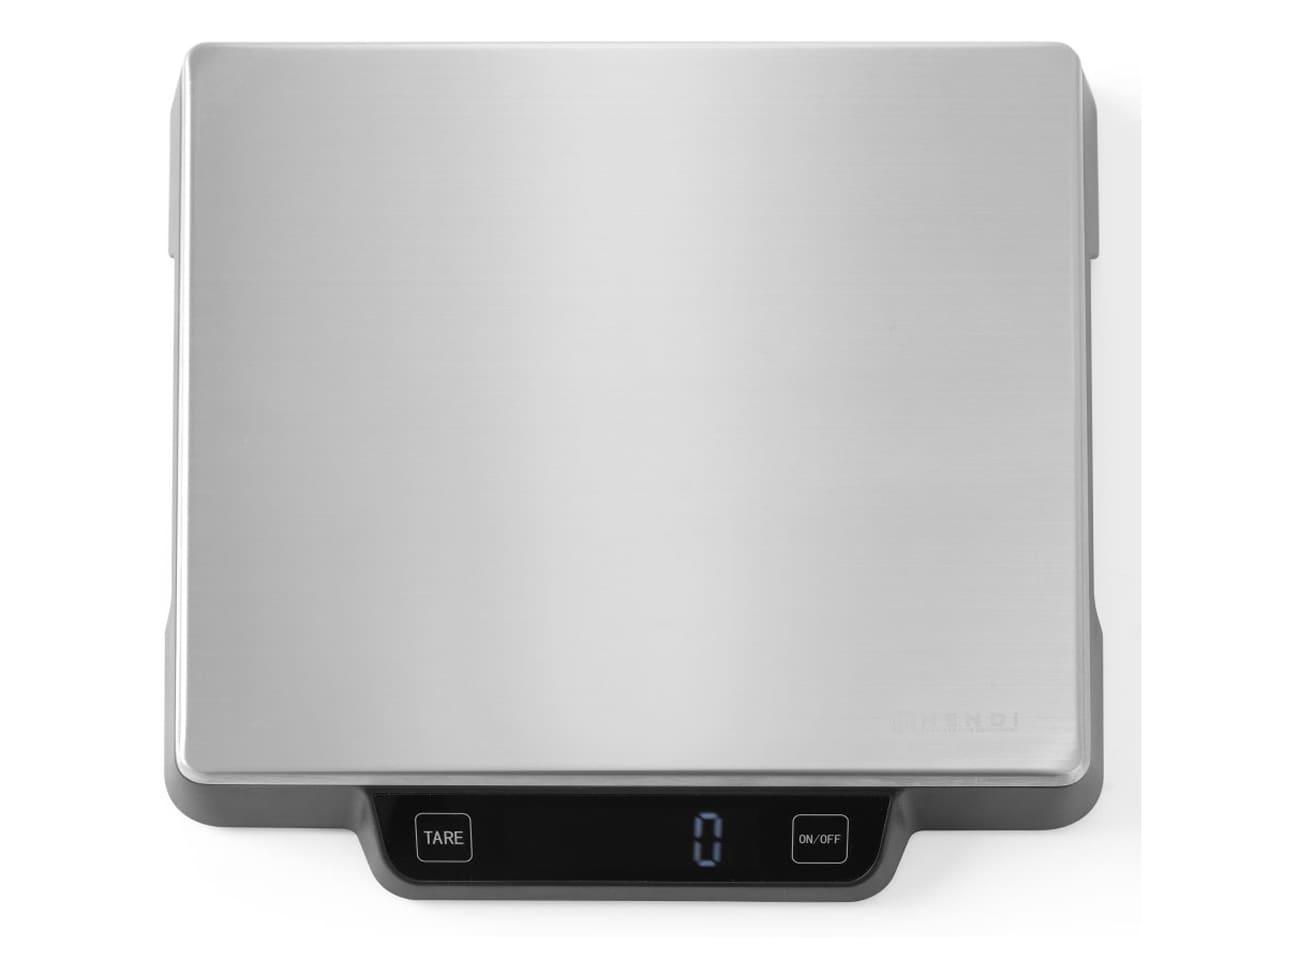 DAC Forniture - Bilancia da cucina digitale, 170x215x(H)55 mm 1 g